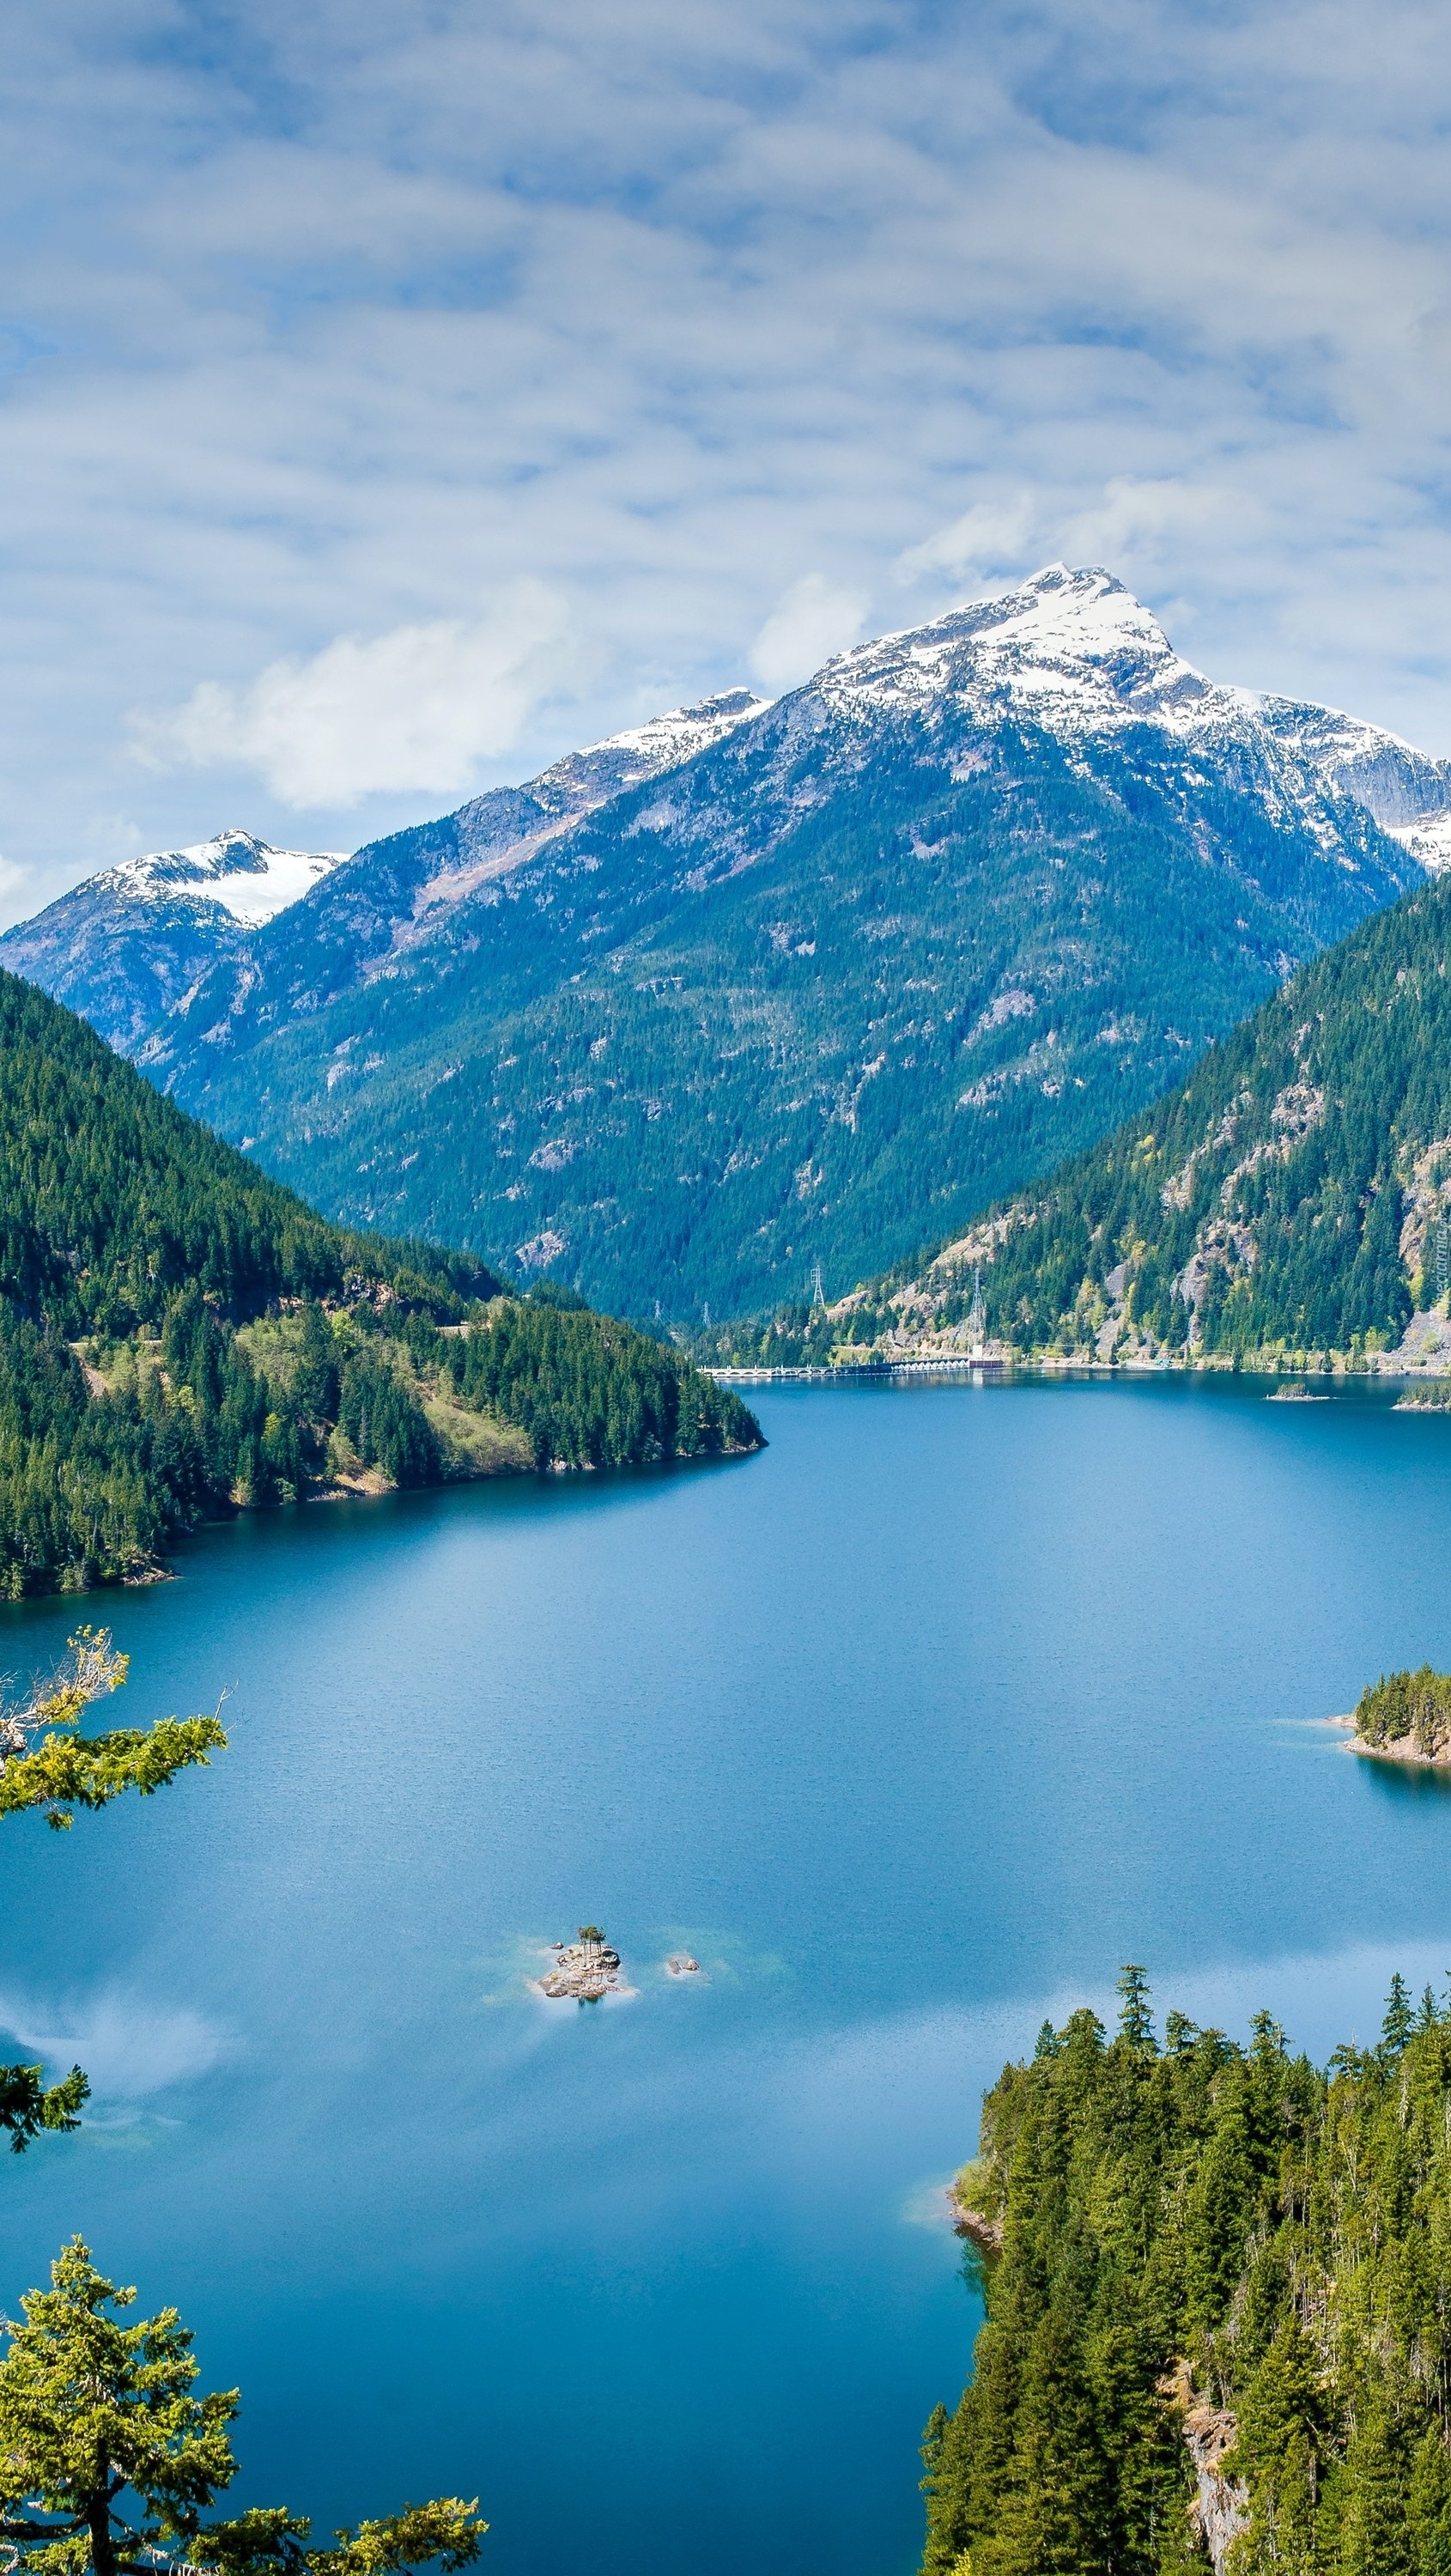 Szmaragdowe jezioro w otoczeniu gór i lasów